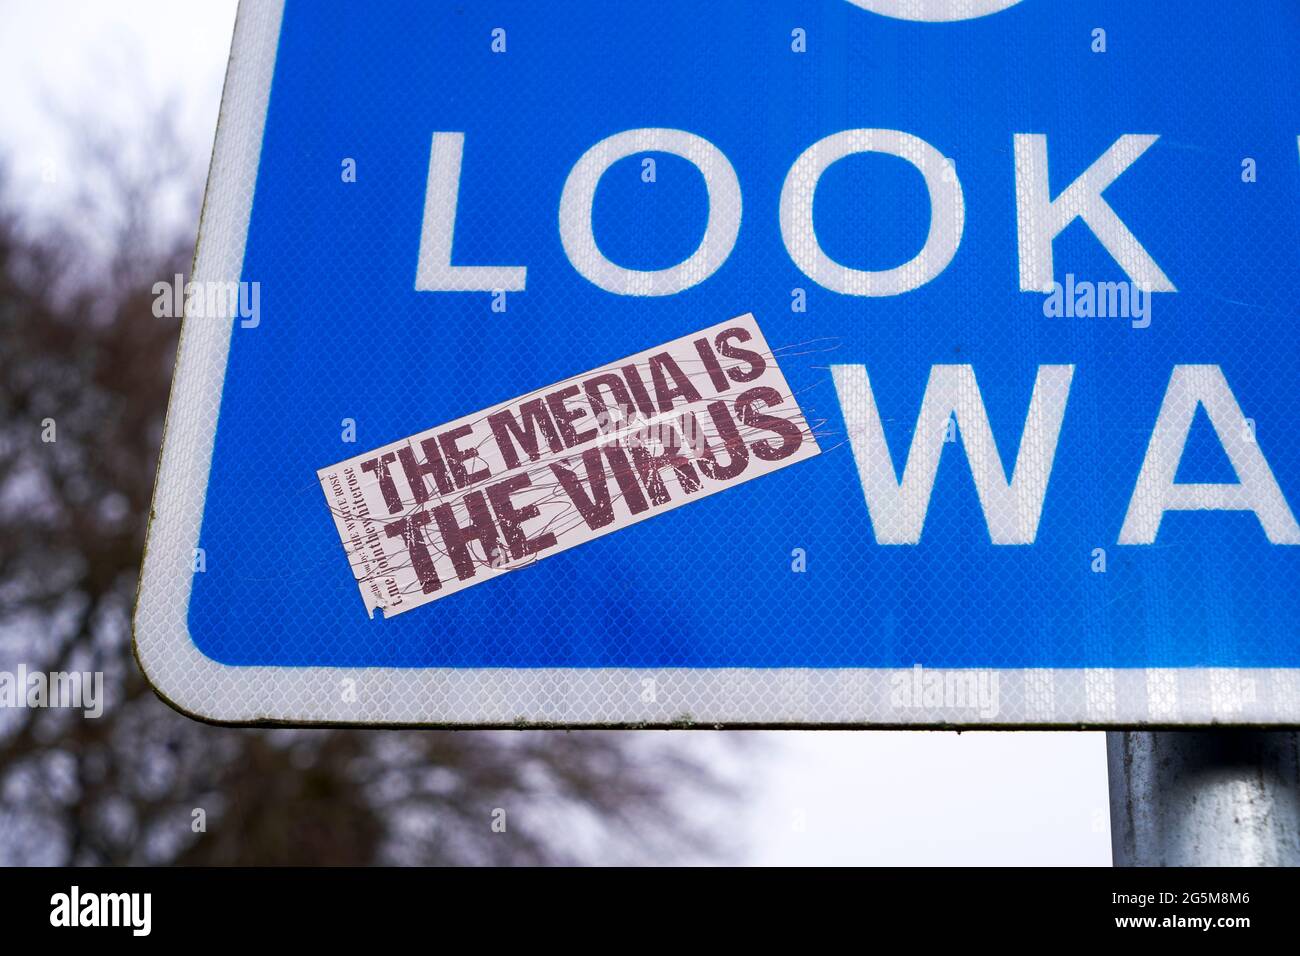 Autocollant sur un panneau d'information réfléchissant indiquant que les médias sont le virus pendant la pandémie du coronavirus Covid-19 publié par l'organisation White Rose Banque D'Images